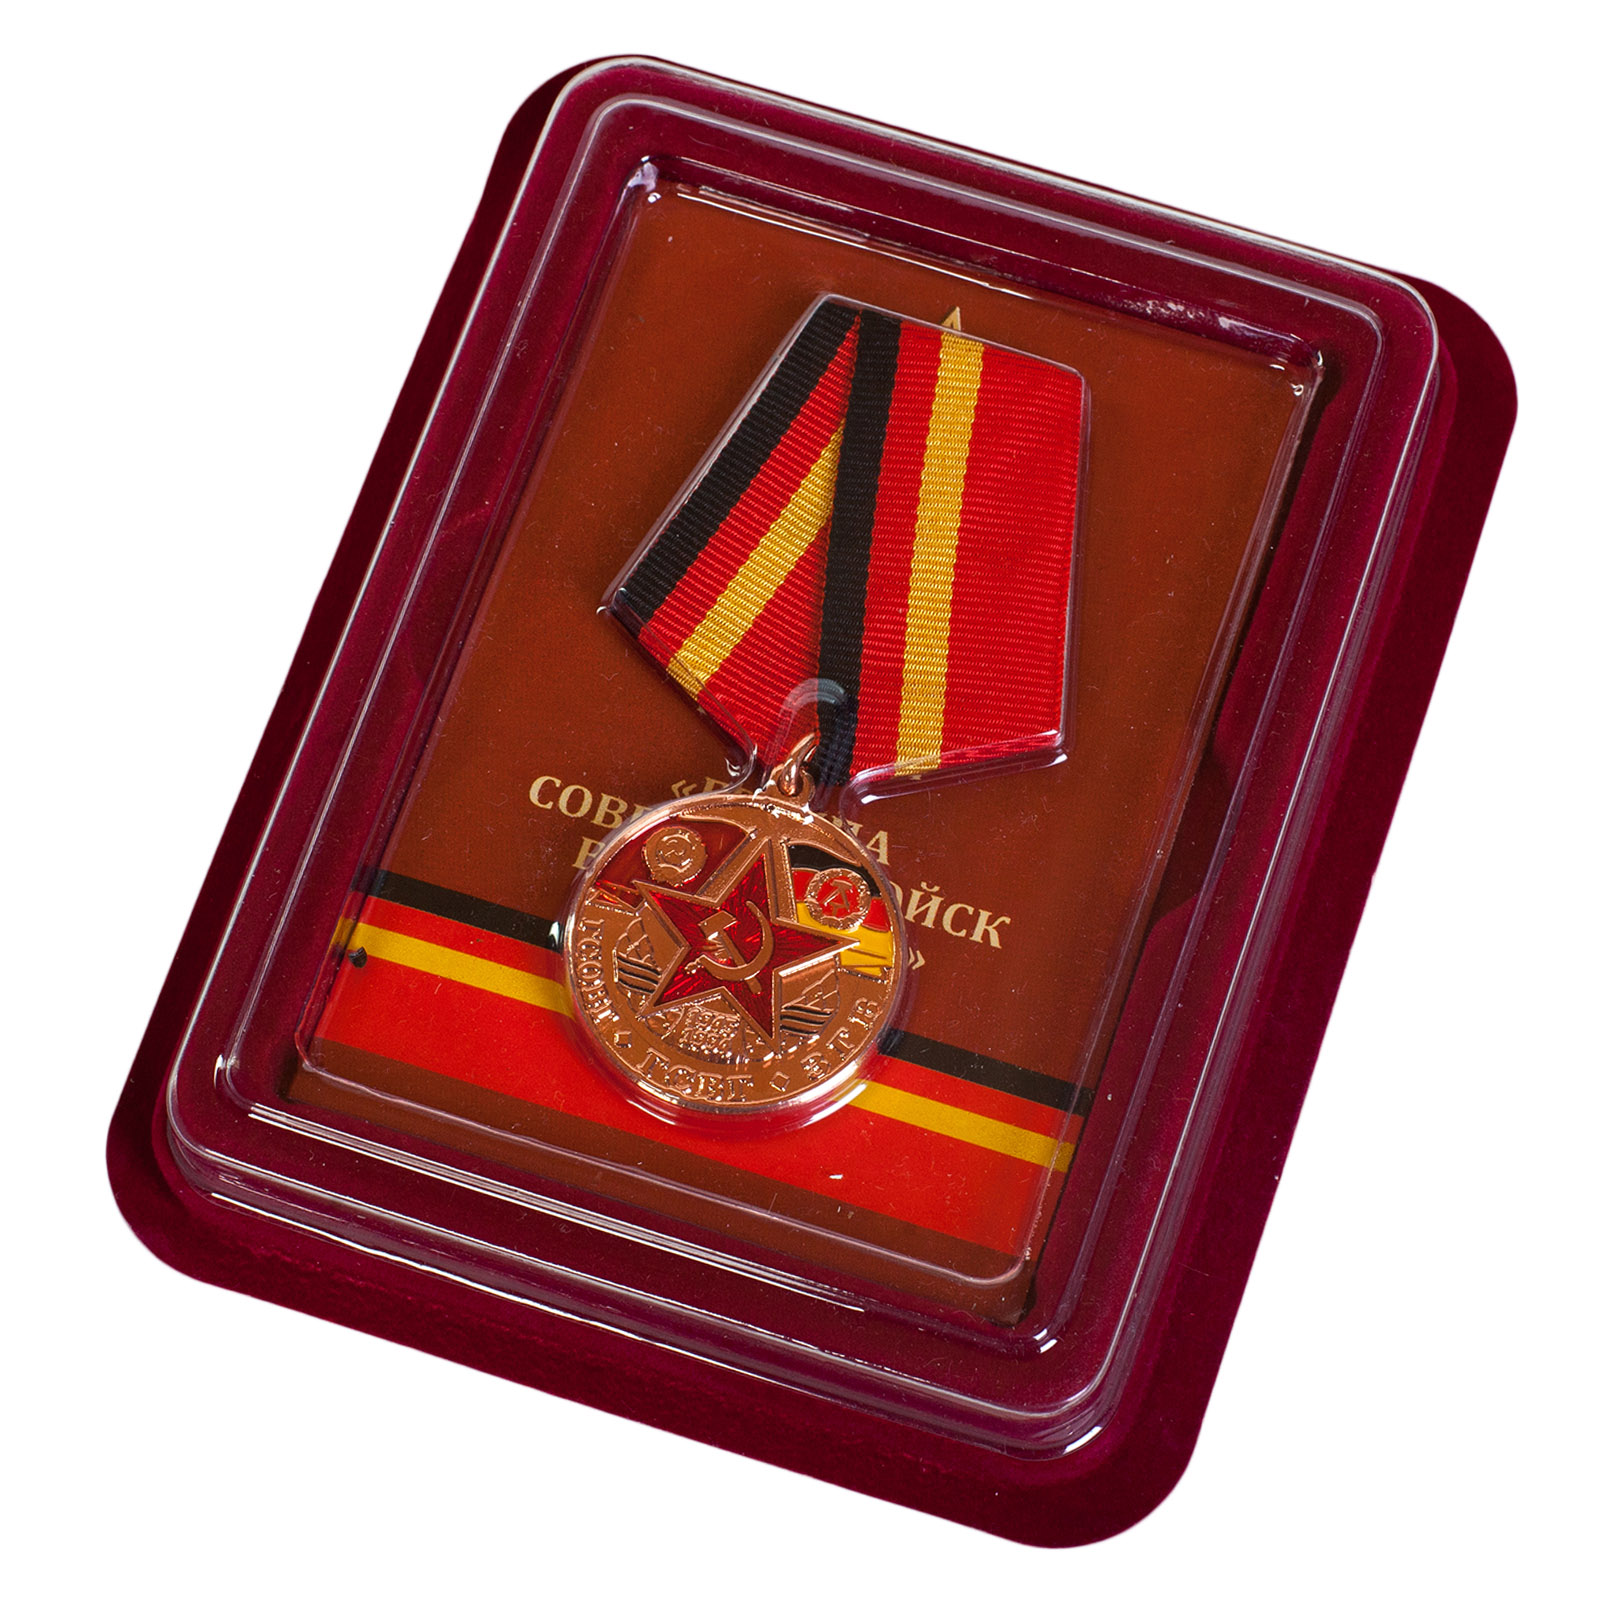 Купить памятную медаль Группа Советских войск в Германии оптом ил в розницу